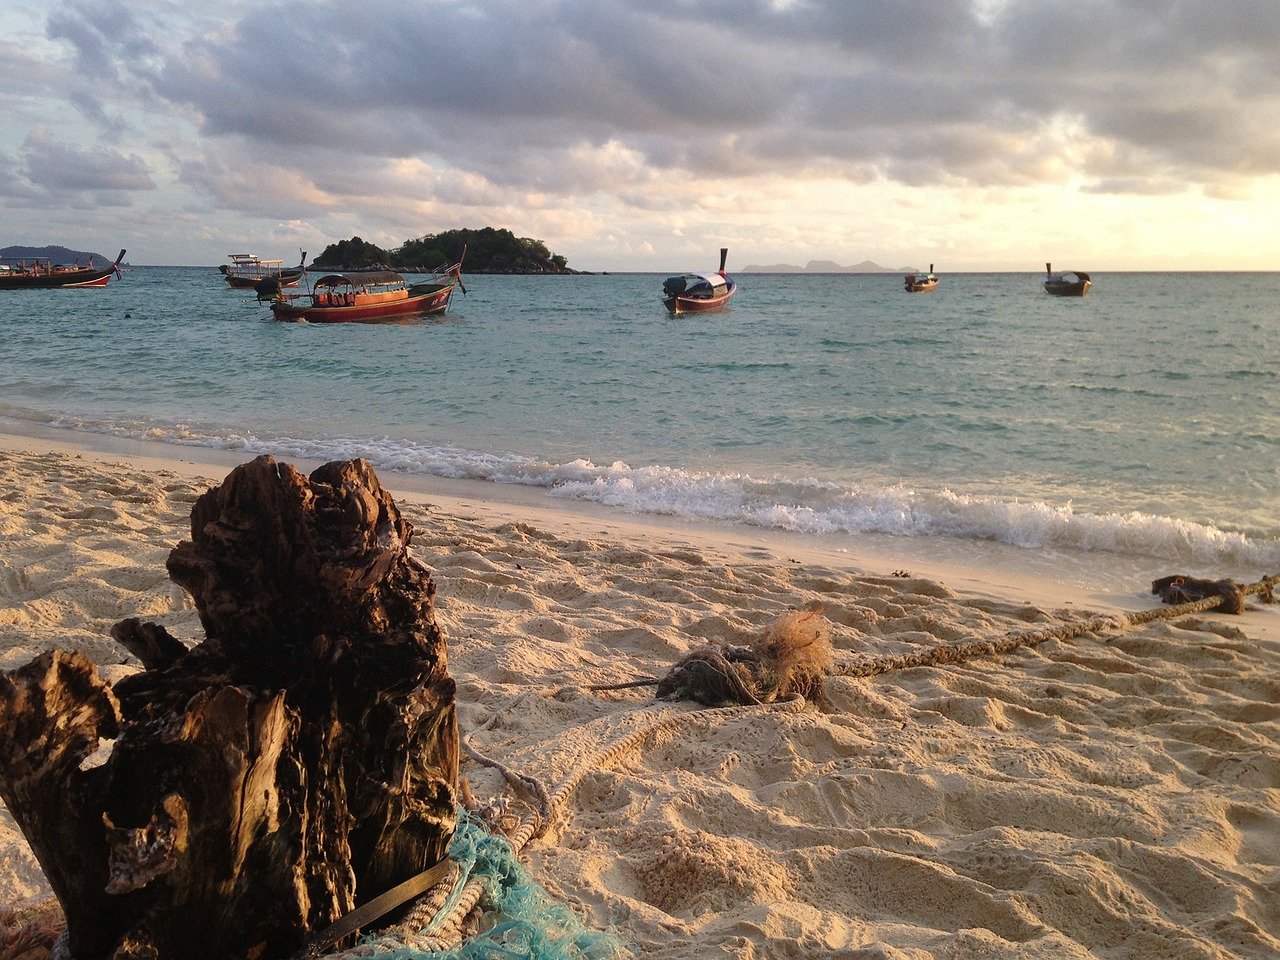 Het strand van Koh Lipe met boten in zee